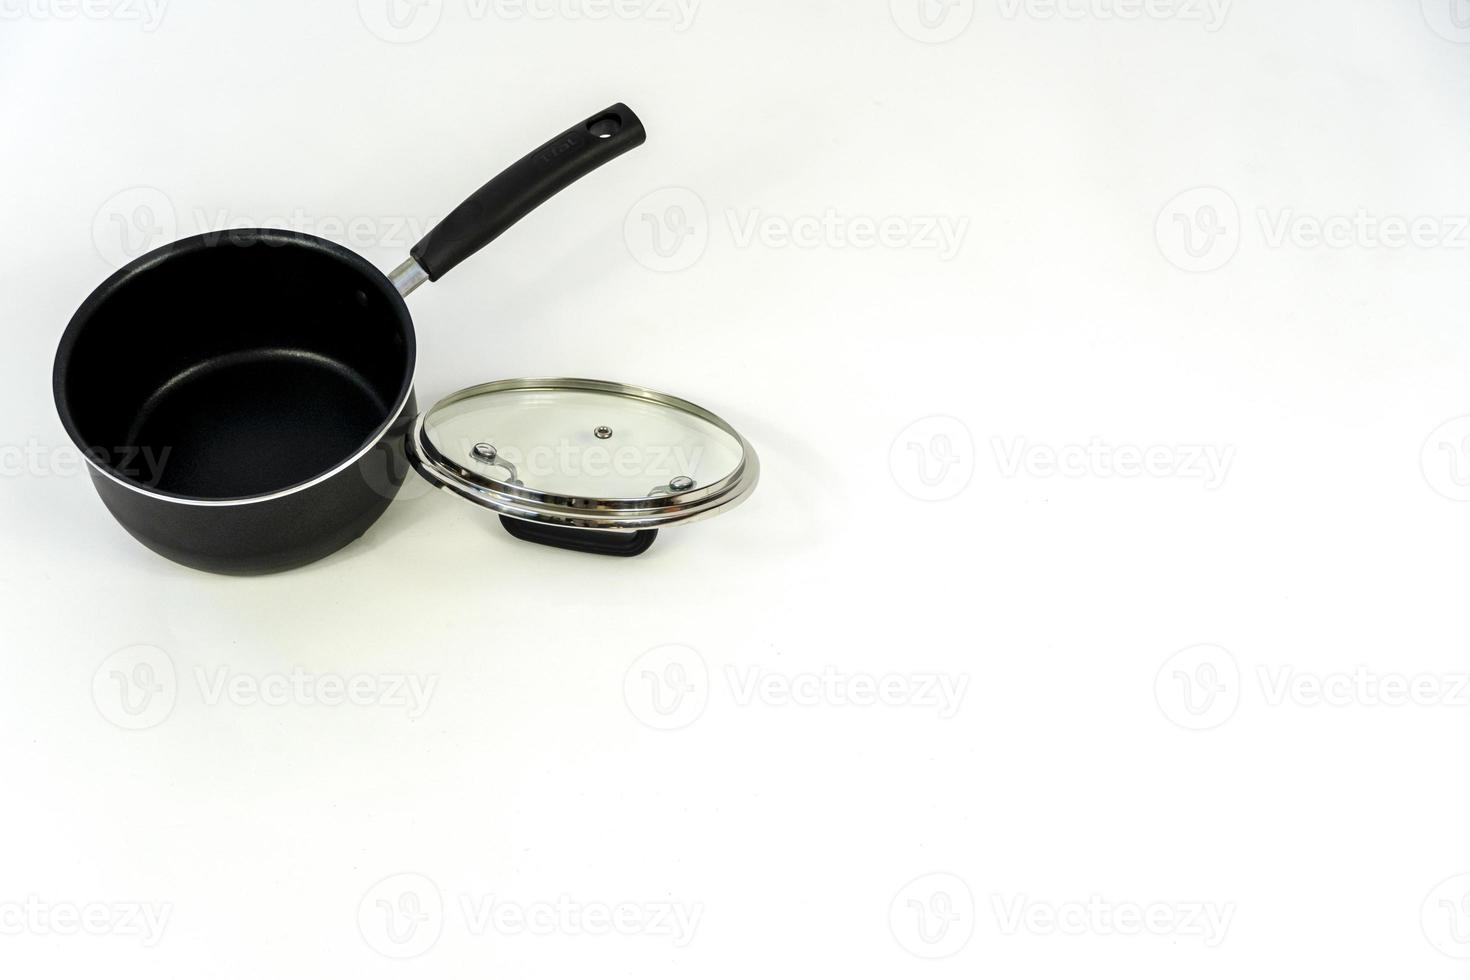 batterie de cuisine, set de table en acier isolé sur fond blanc, batterie de cuisine en métal noir photo